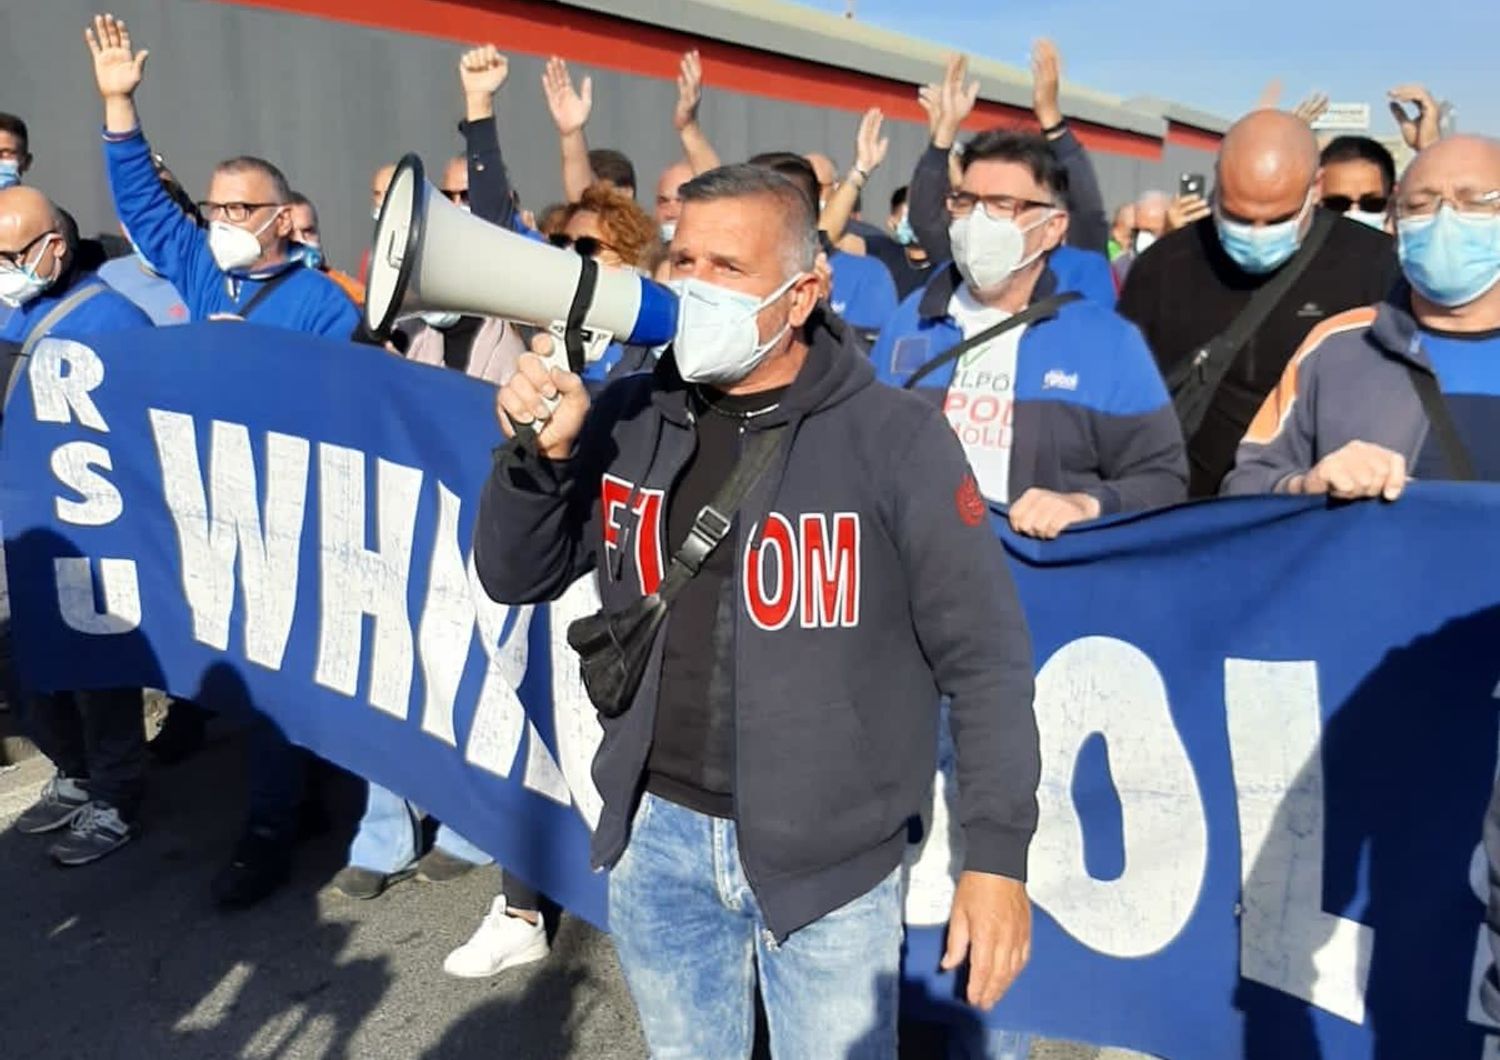 La manifestazione dei lavoratori della Whirlpool di Napoli